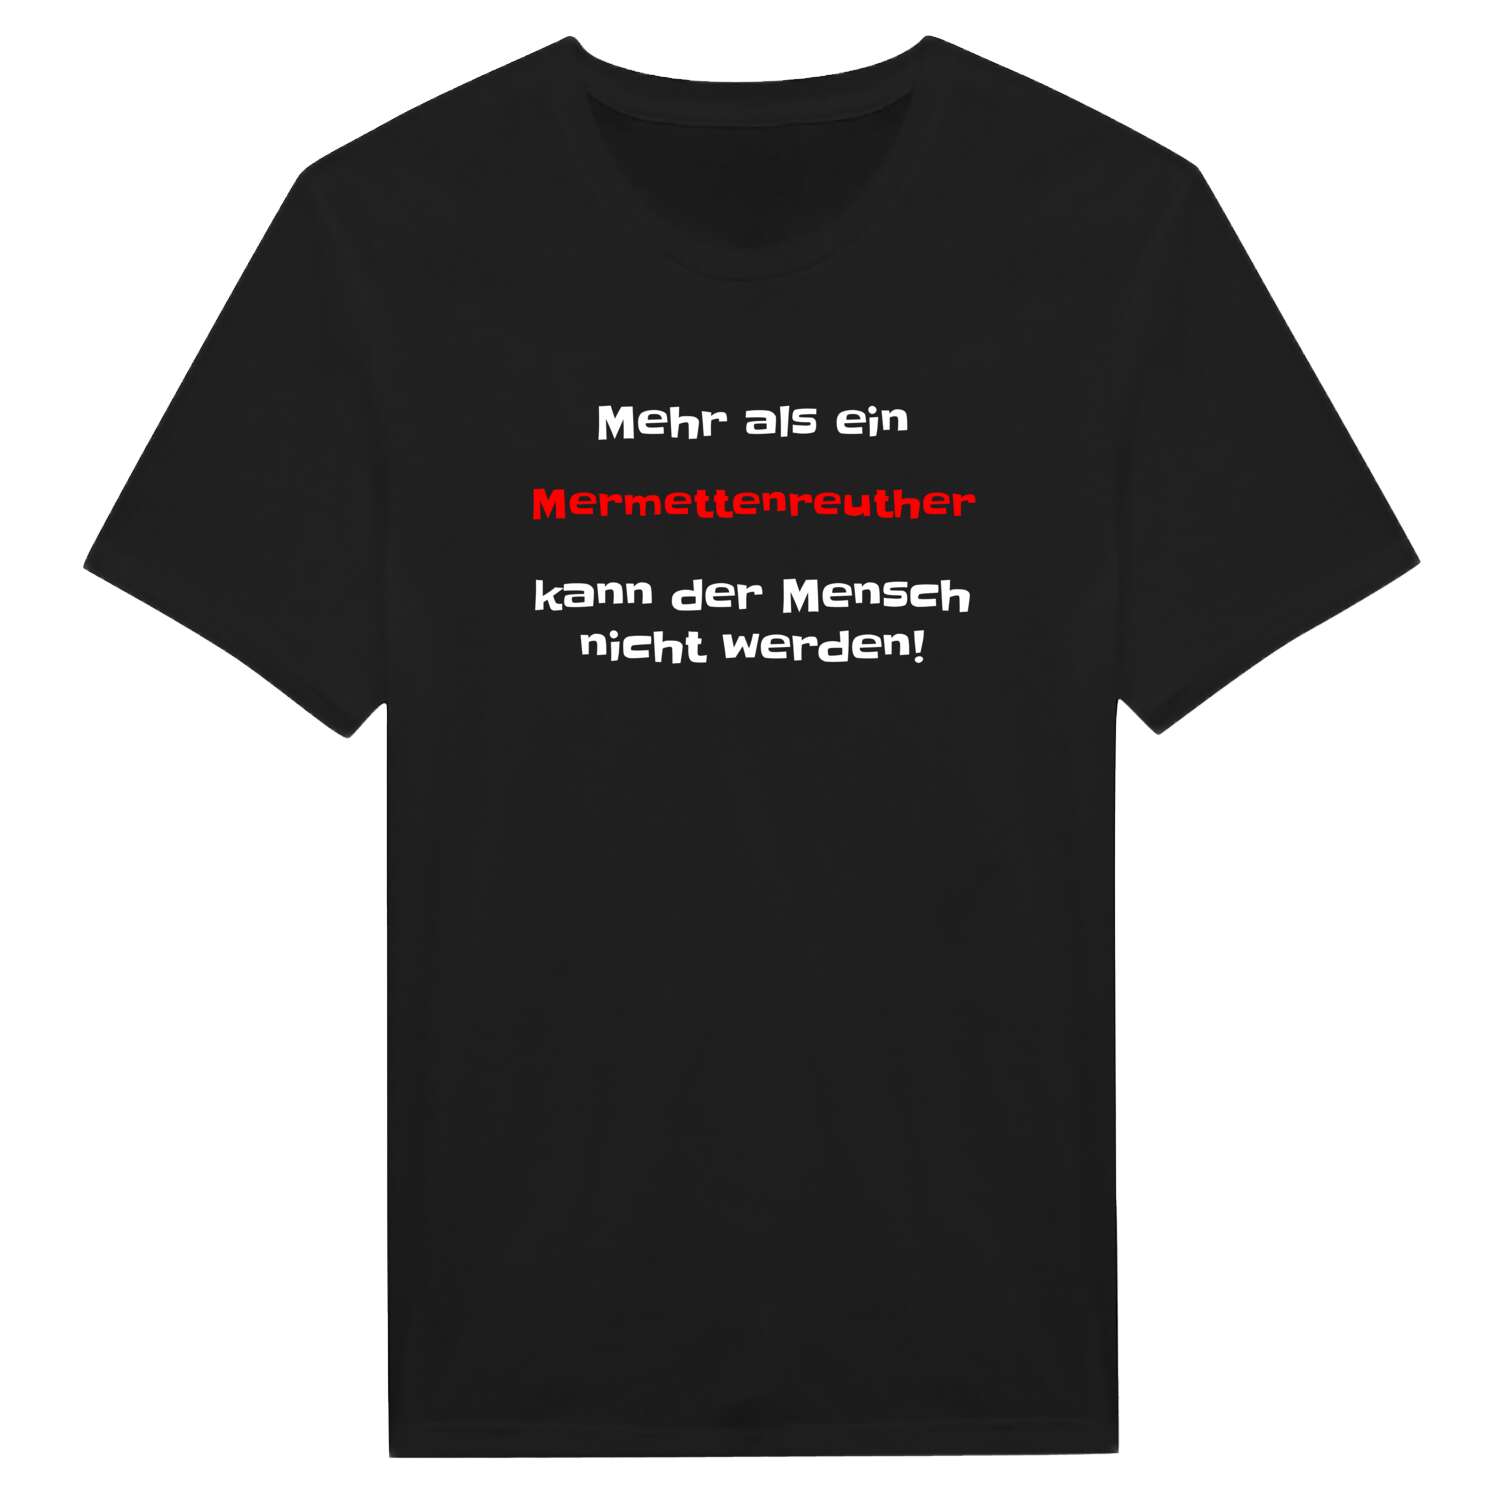 Mermettenreuth T-Shirt »Mehr als ein«